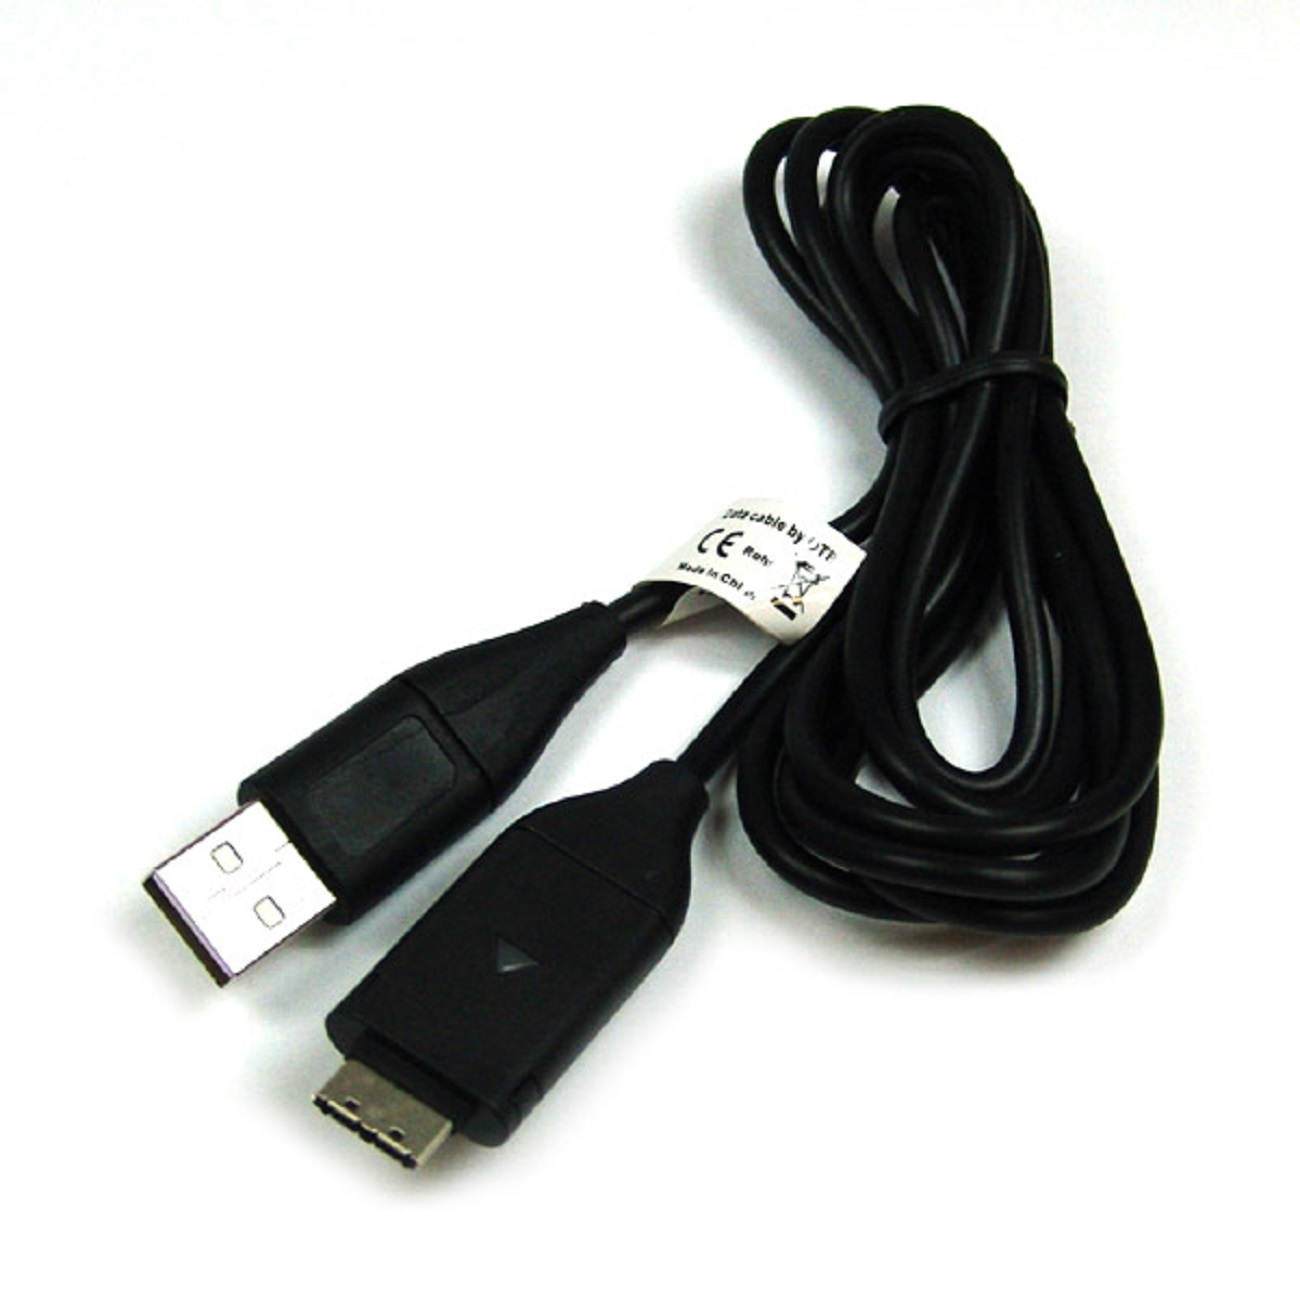 MOBILOTEC USB-Ladekabel kompatibel mit Samsung ST30 Samsung, schwarz Zubehör